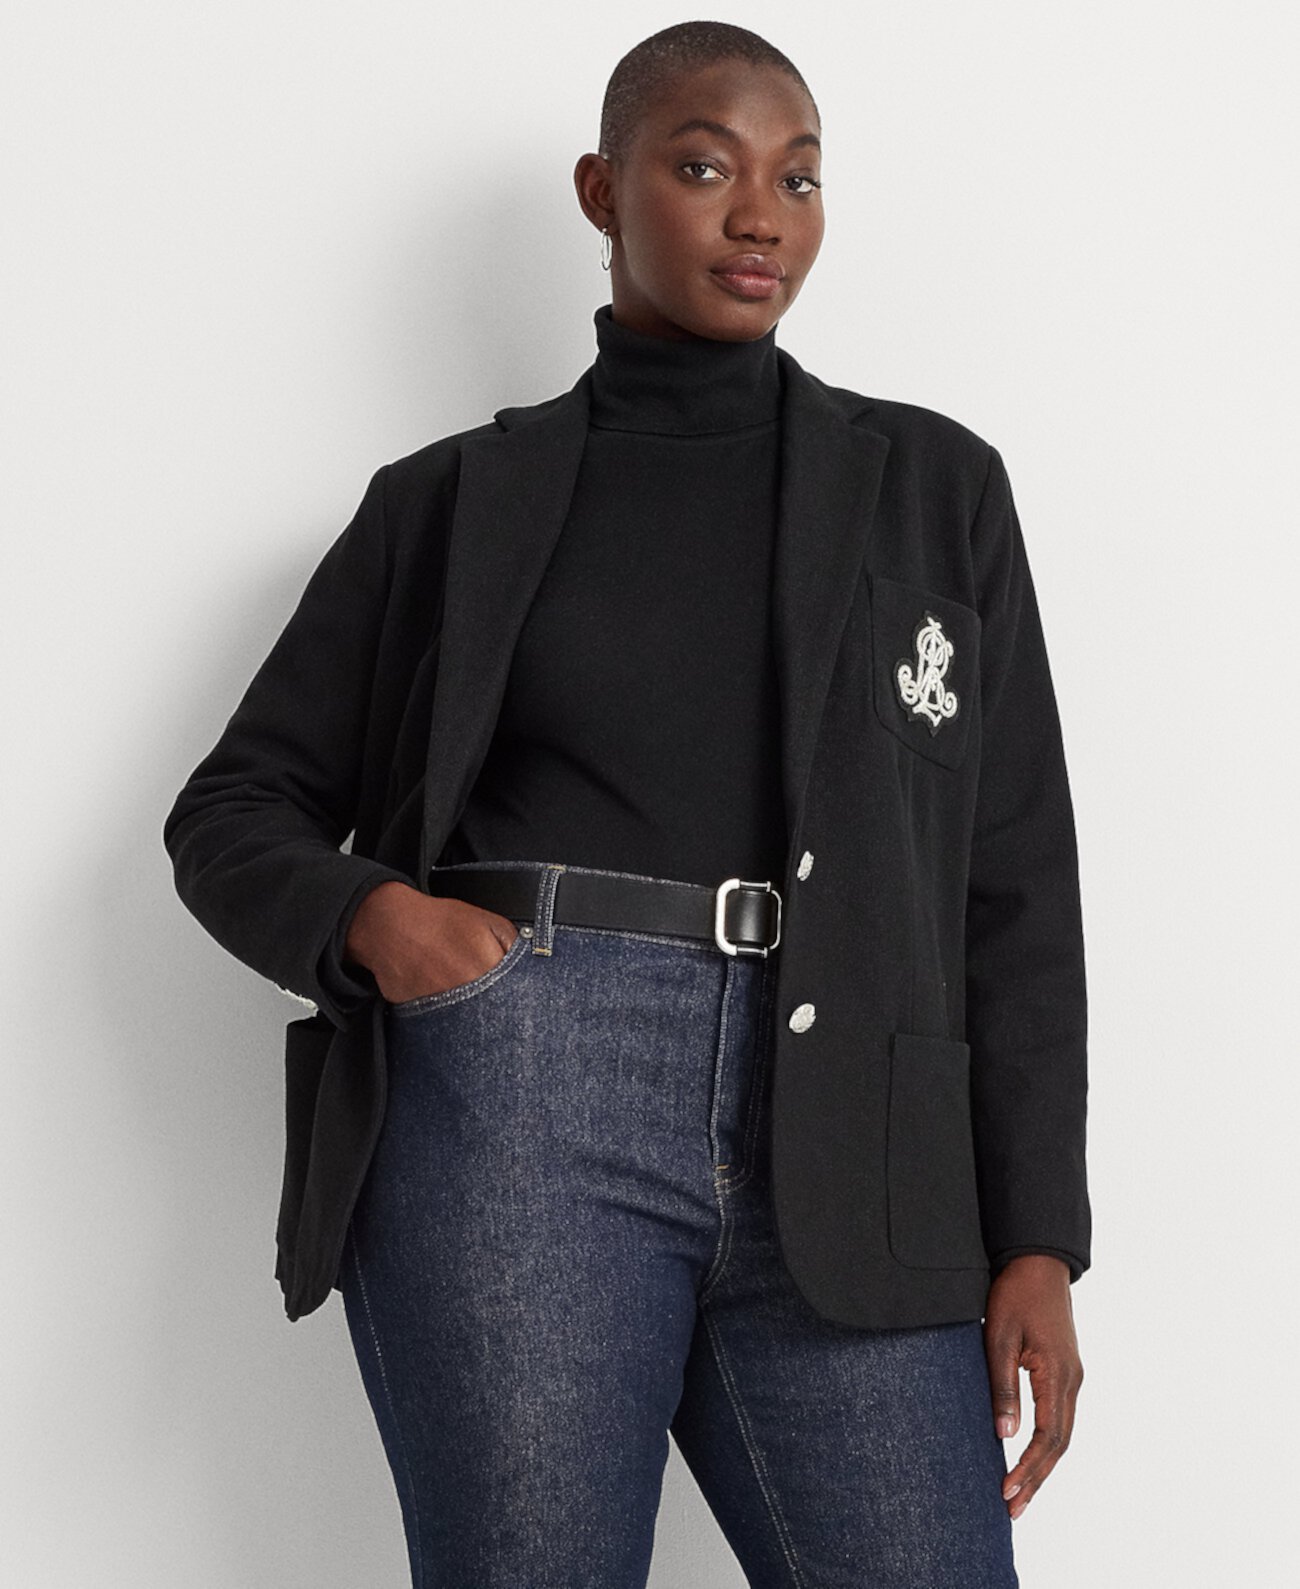 Жаккардовый пиджак больших размеров LAUREN Ralph Lauren